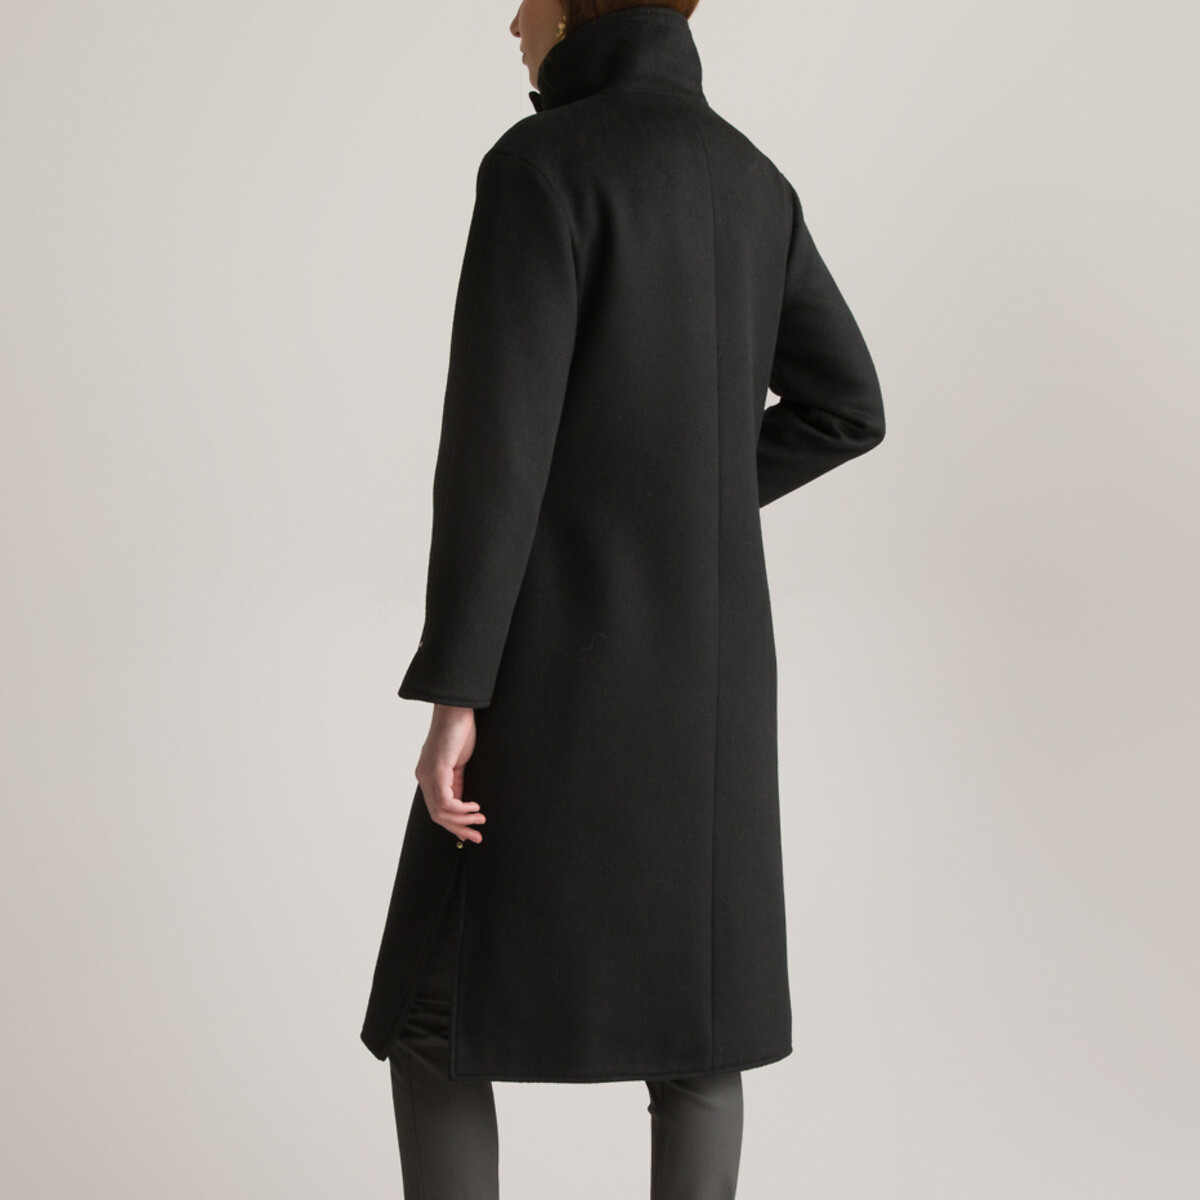 Пальто Длинное асимметричное с завязками 36 (FR) - 42 (RUS) черный LaRedoute, размер 36 (FR) - 42 (RUS) Пальто Длинное асимметричное с завязками 36 (FR) - 42 (RUS) черный - фото 4